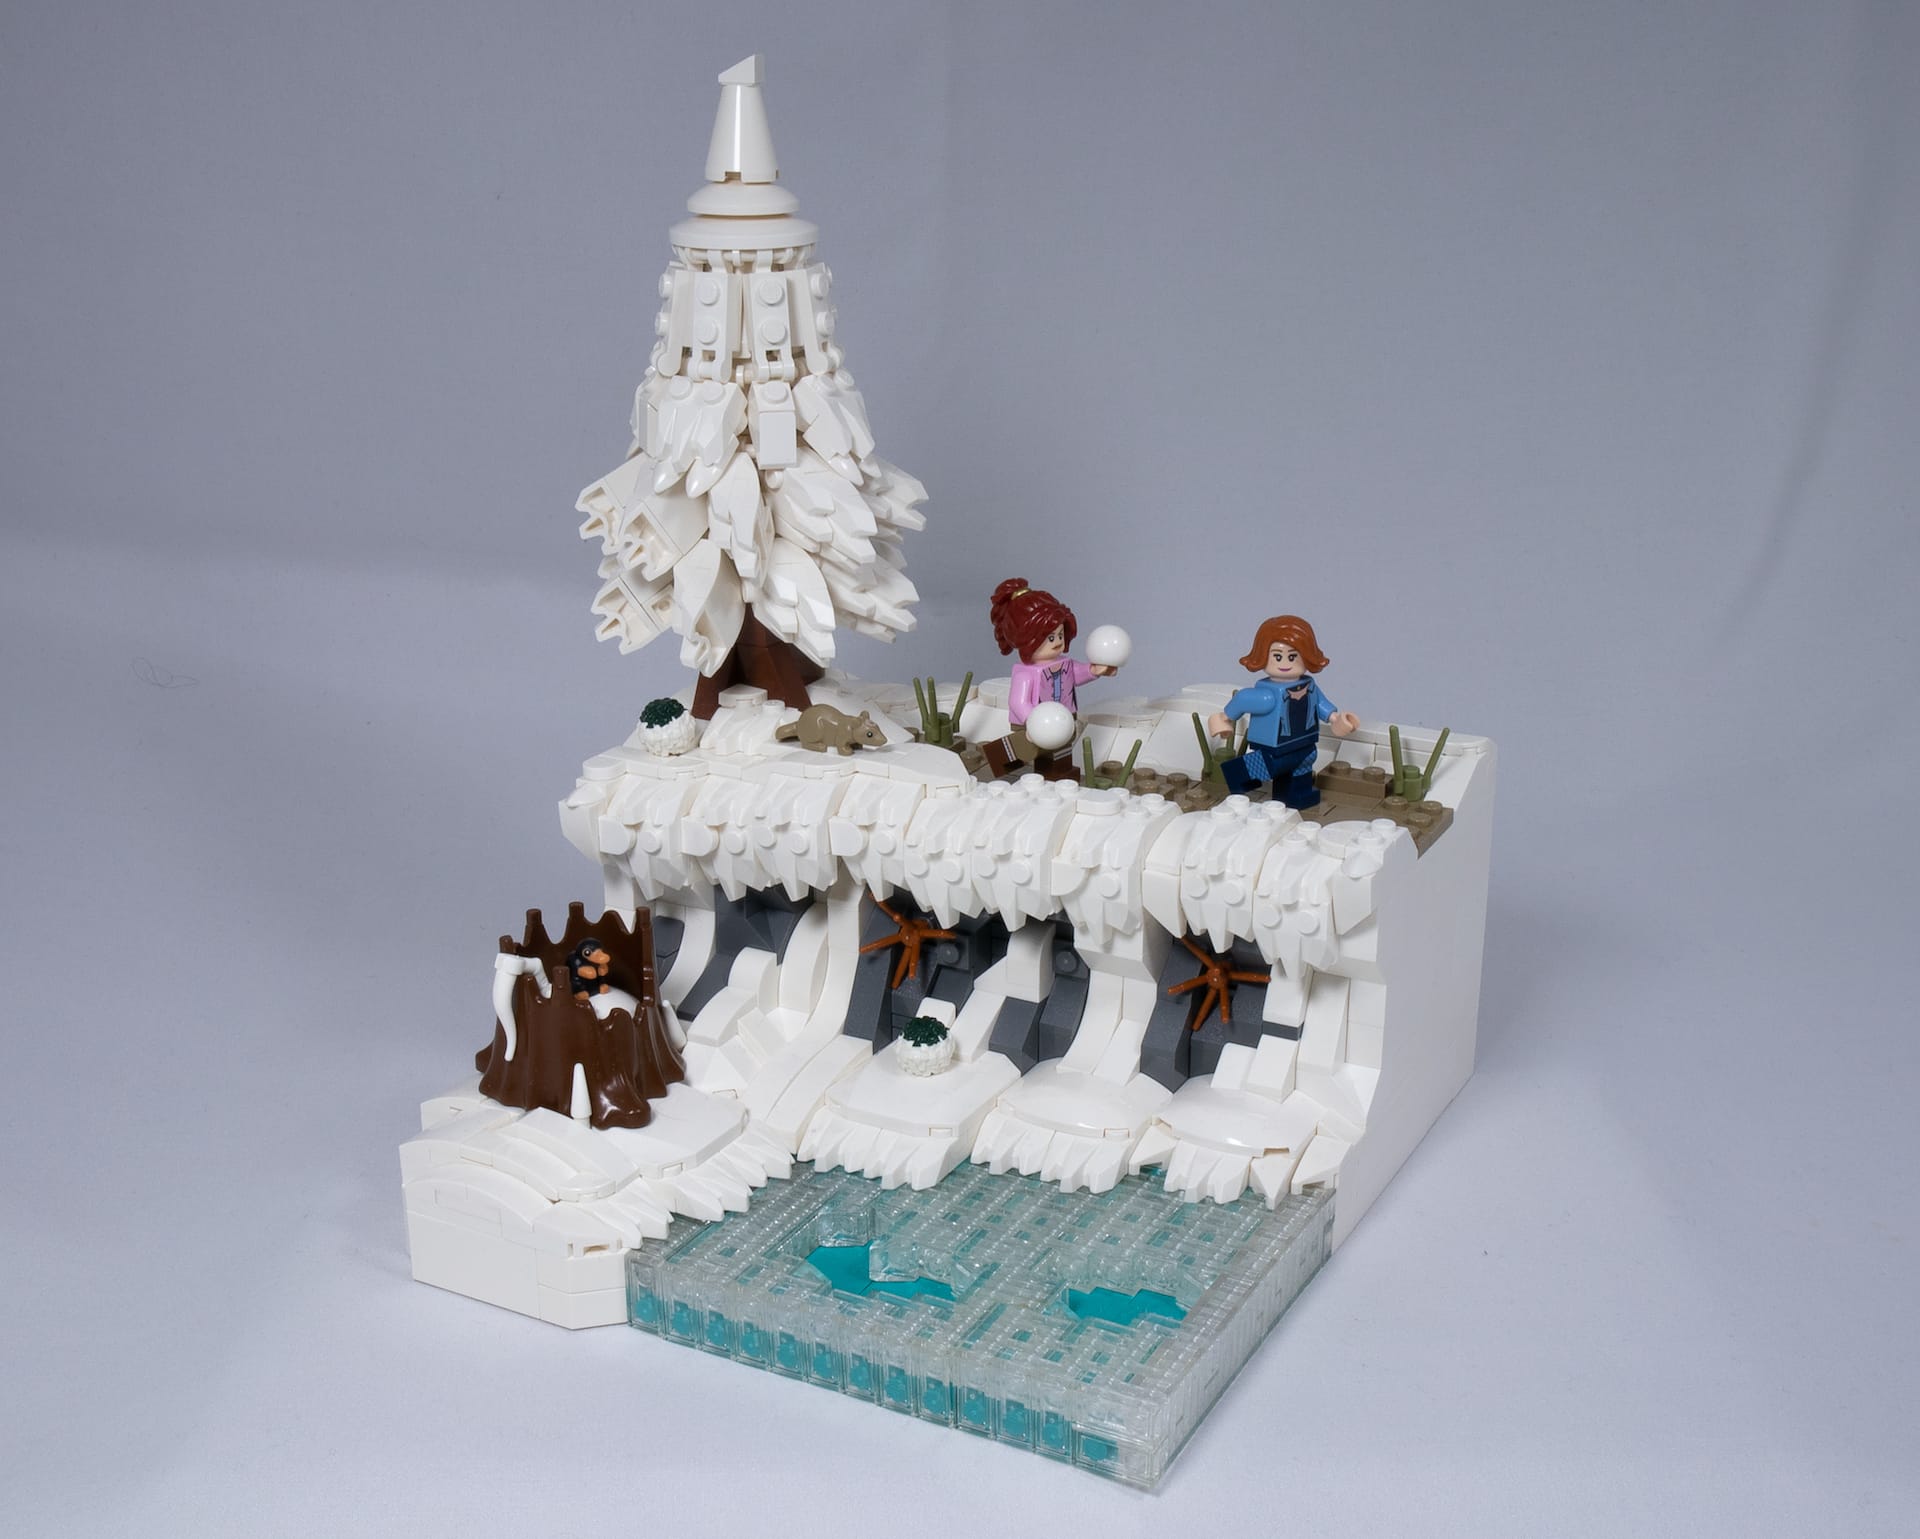 Concurs Winter Brickland – Creatia 2: Cold Lake